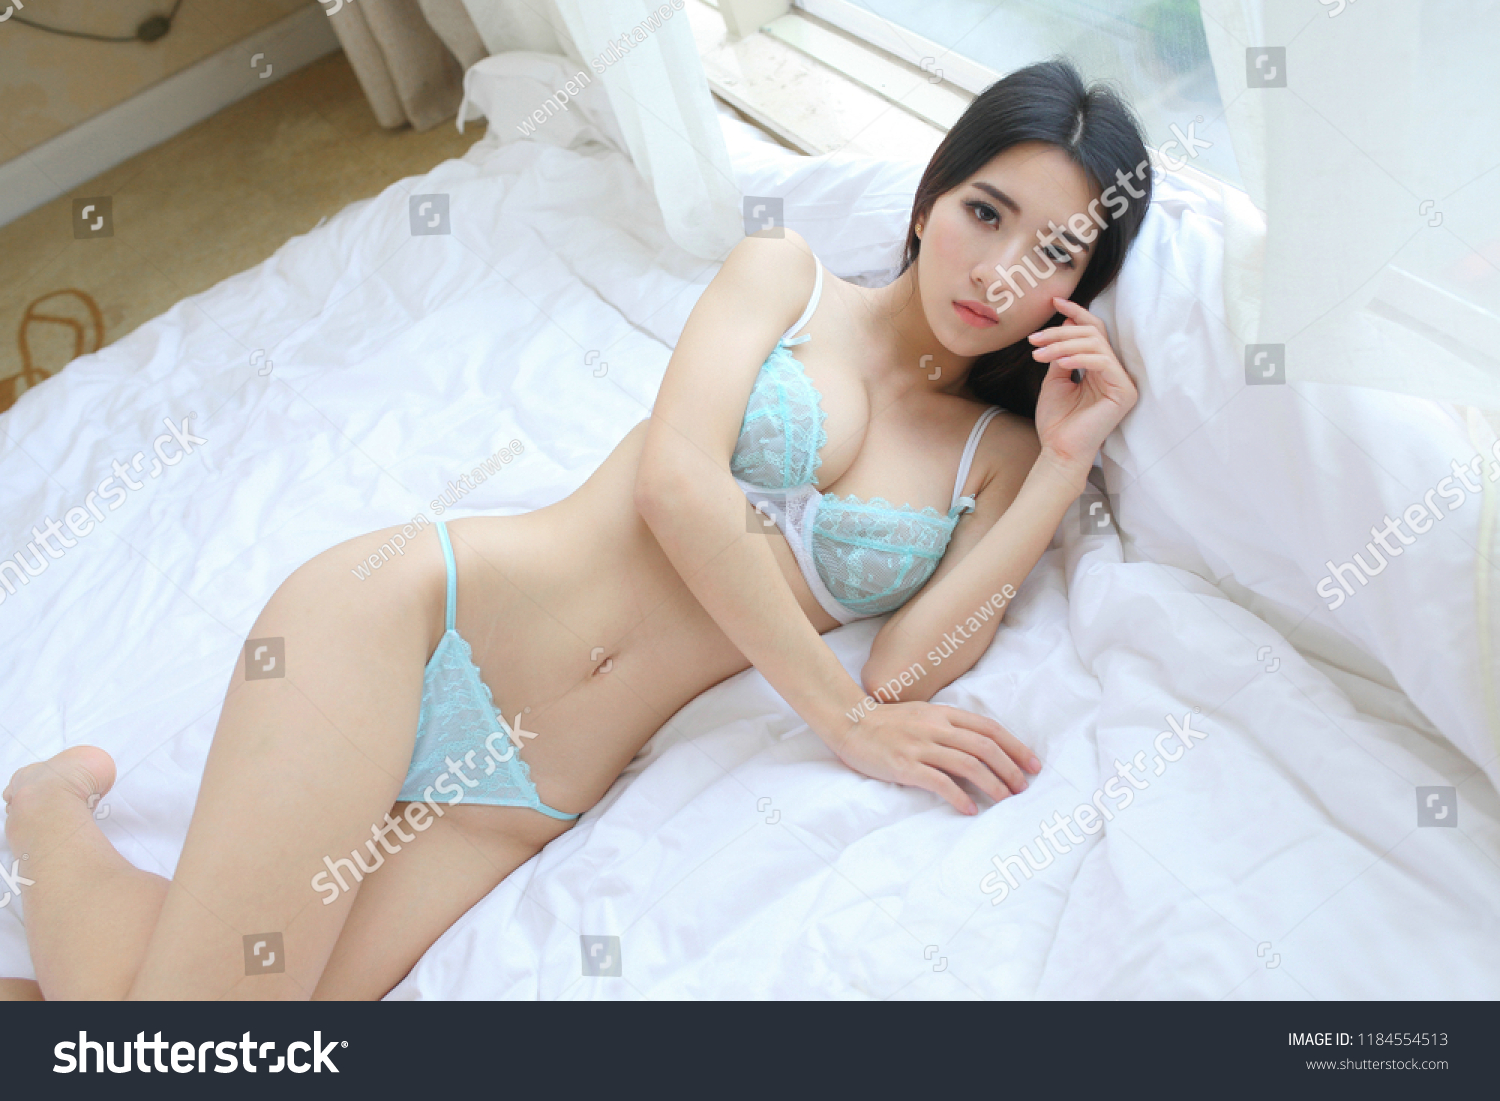 Asian beauty nude art